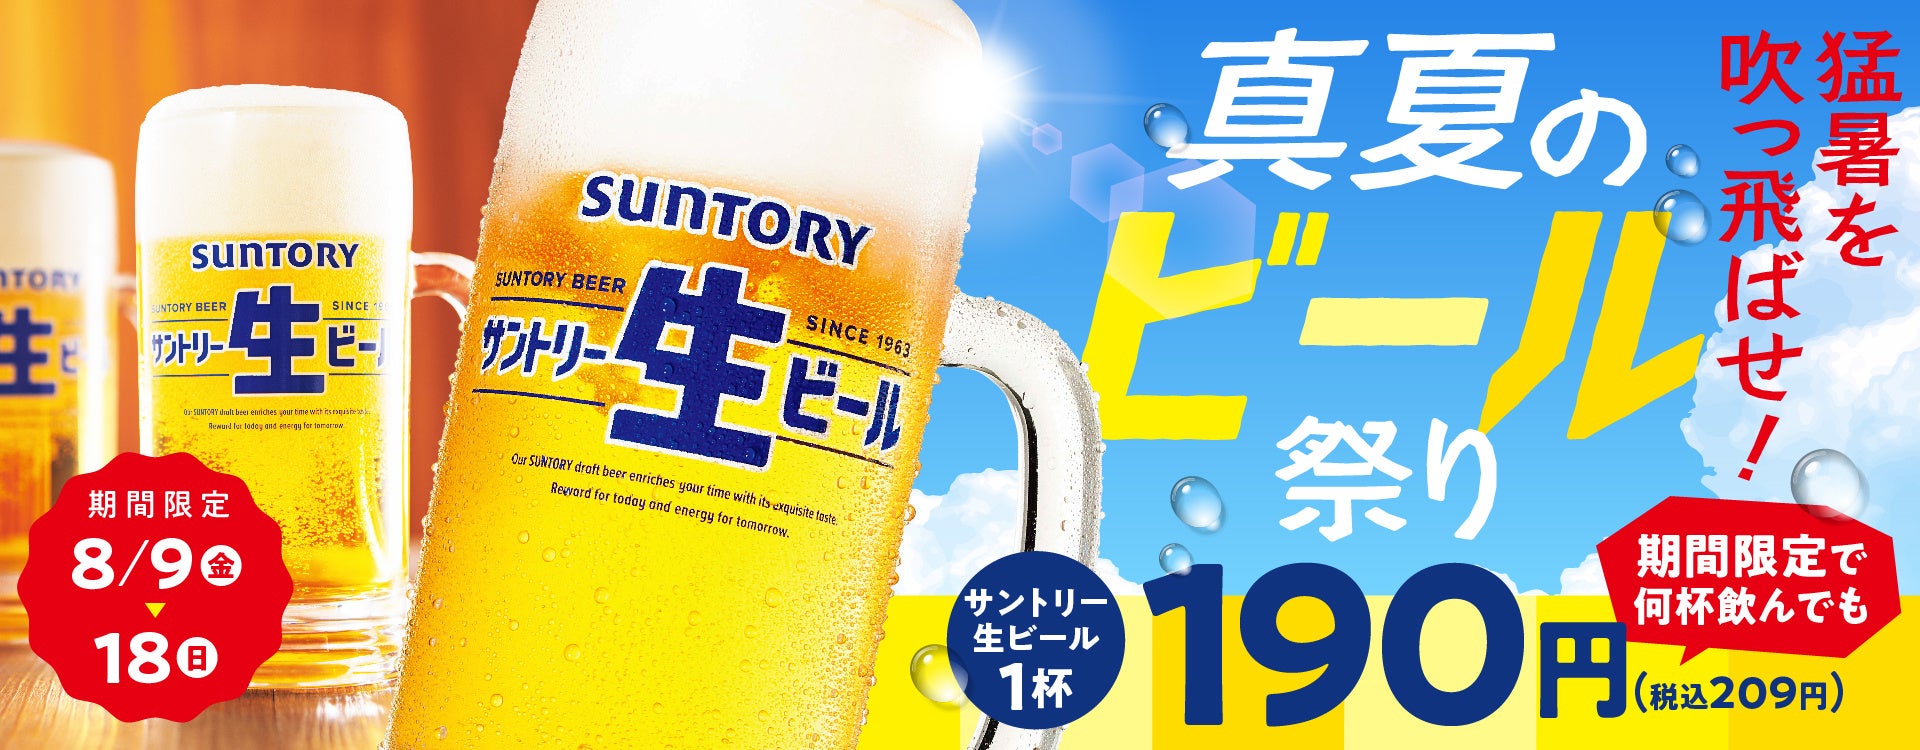 【8/1】汐留、日本橋で「クラフトビール時間無制限飲み放題パスポート」会員権の一般販売を開始